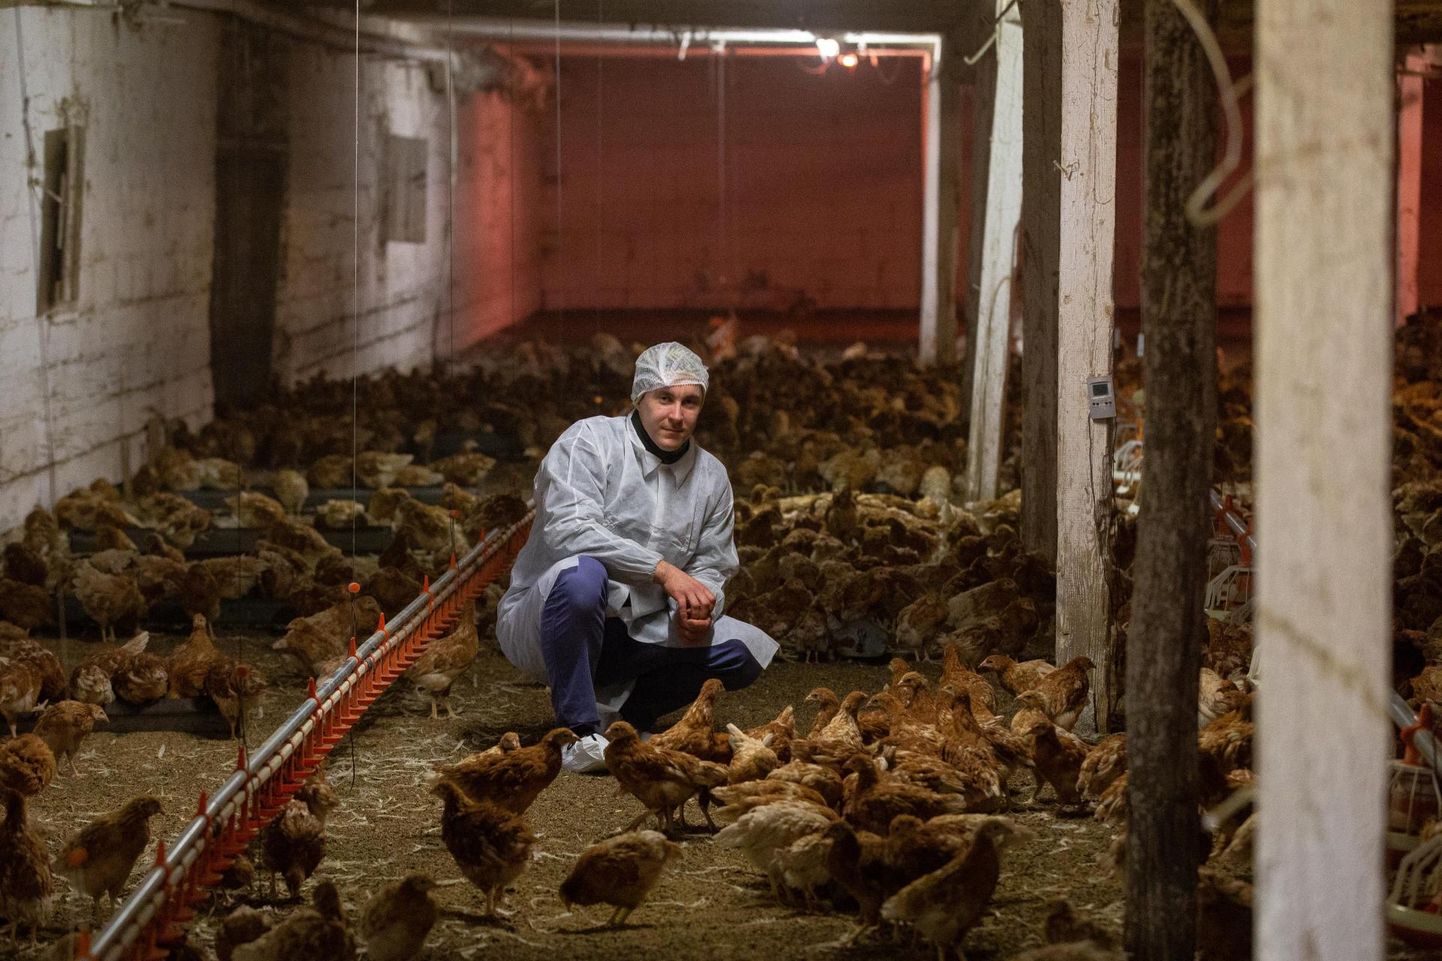 Erinevalt paljudest suurtest kanafarmidest saavad Lauri Bobrovski ettevõtte linnud vabalt ringi siblida.